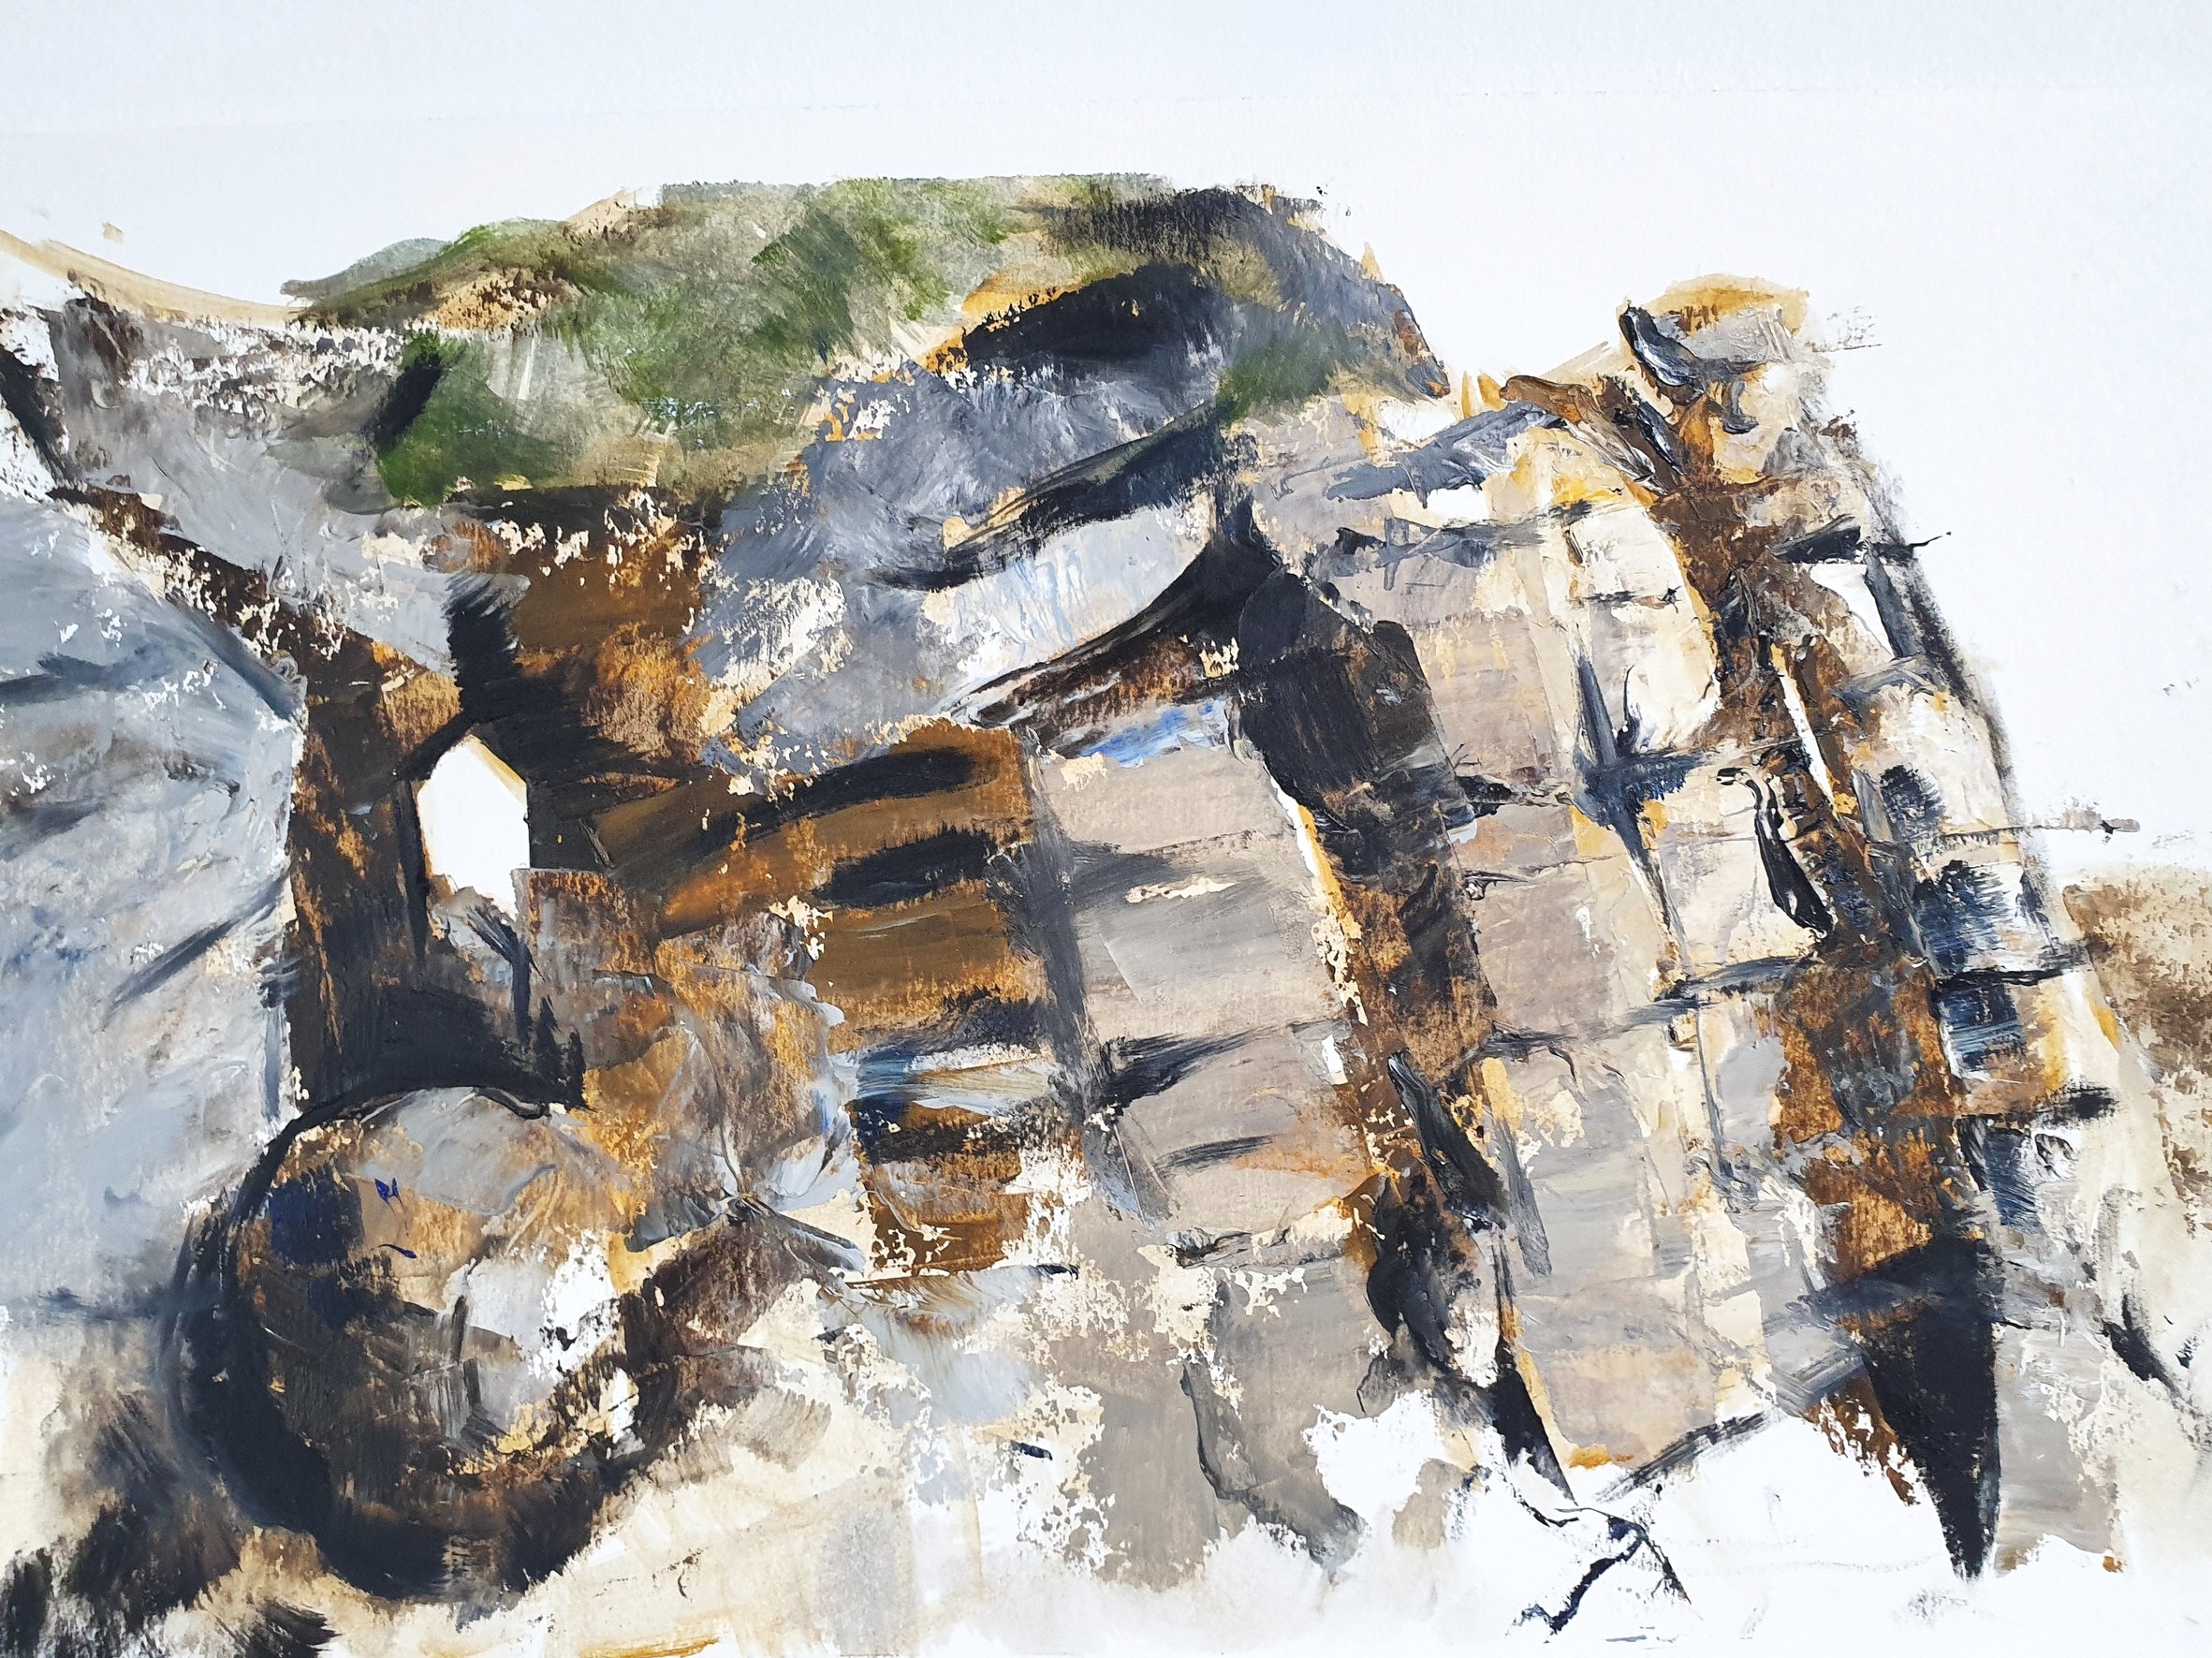 Rocks at Porthgwarra, Oil on Paper